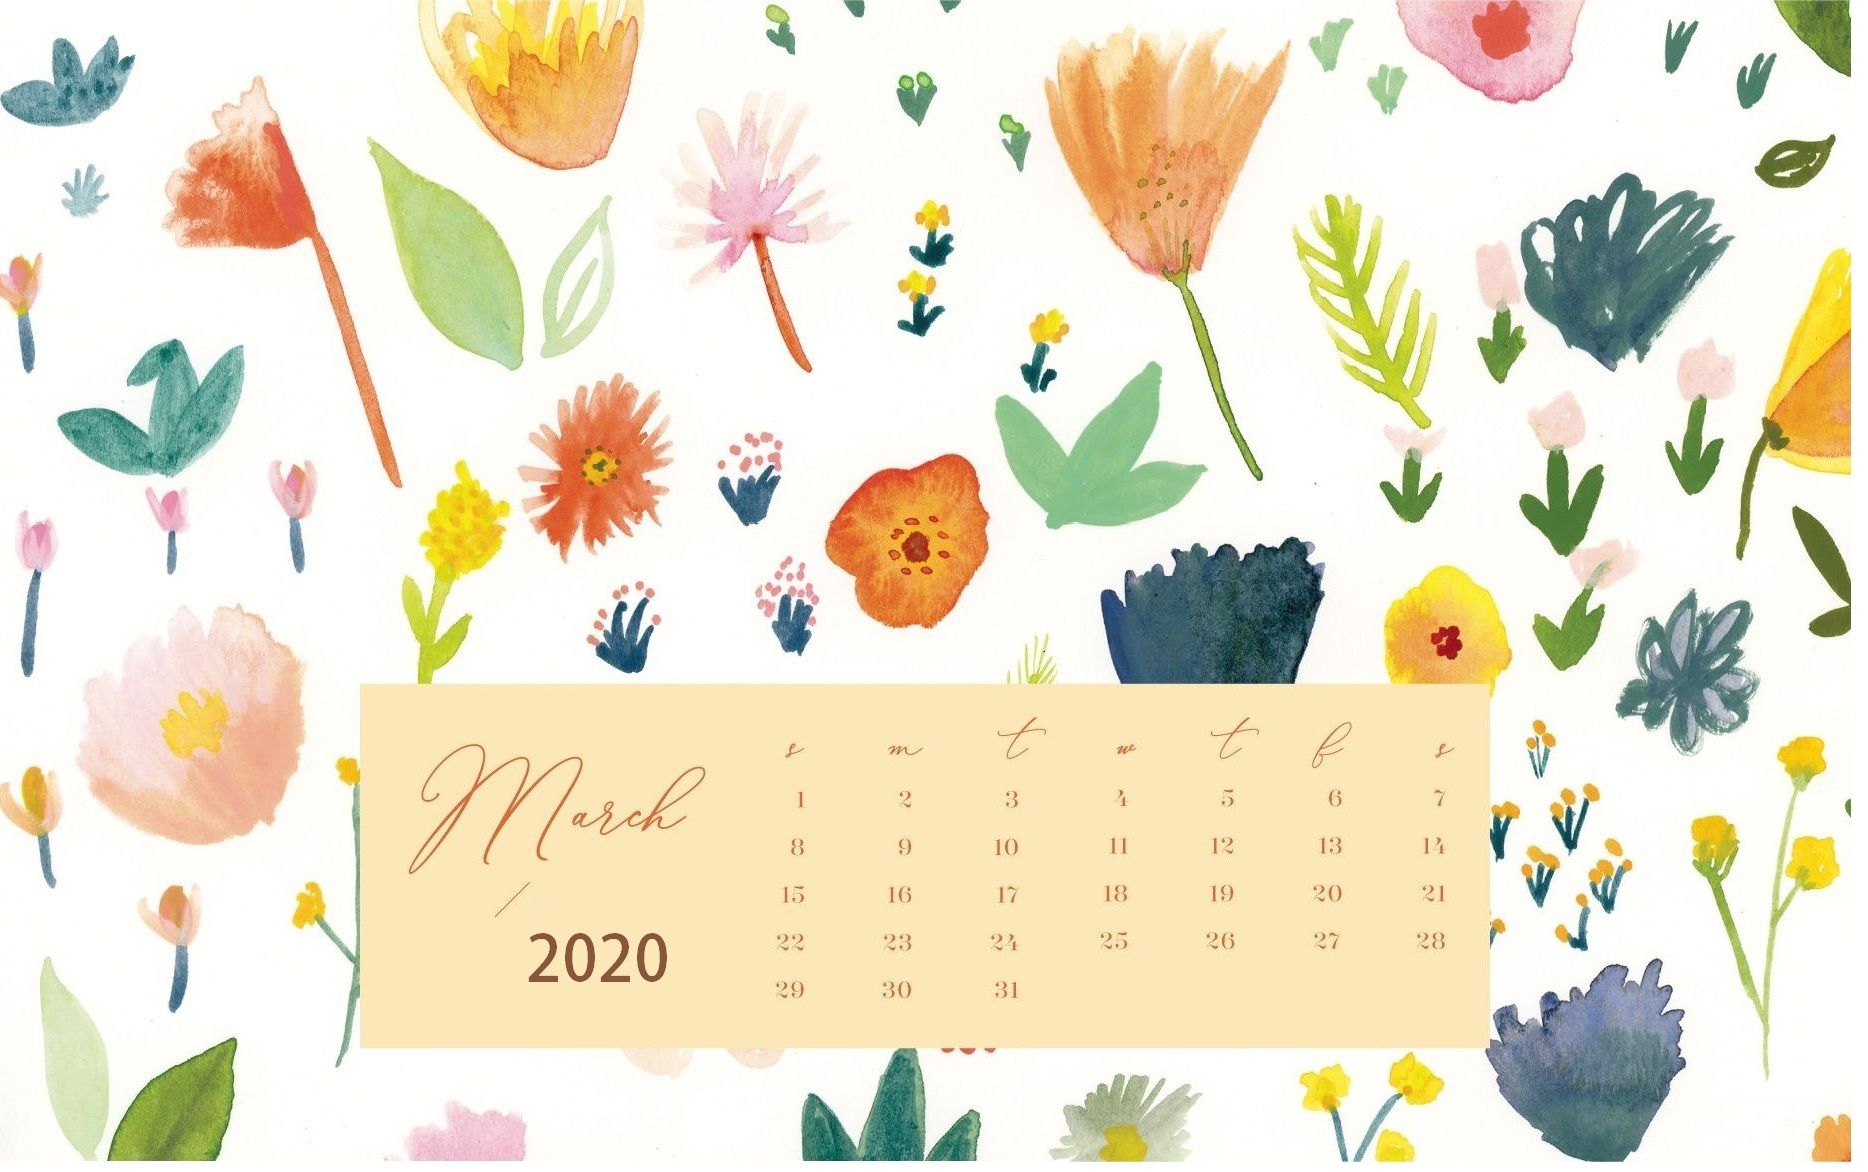 March 2020 Calendar Wallpapers   Top March 2020 Calendar 1868x1172